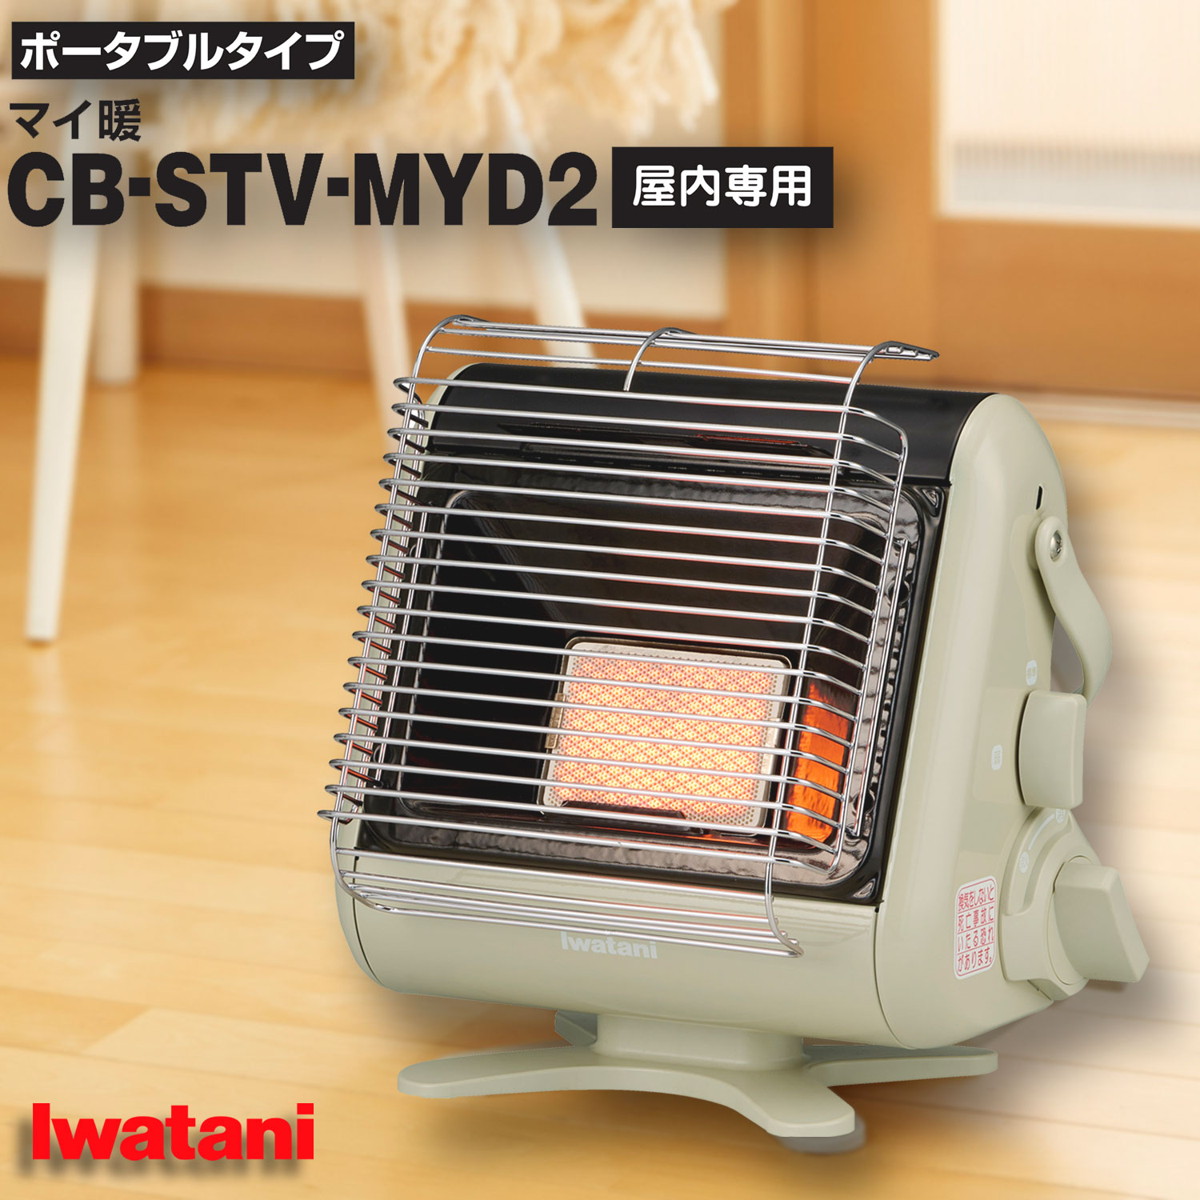 イワタニ iwatani カセットガス ストーブ ポータブル マイ暖 保証書付き コードレス 電源不要 防災対策